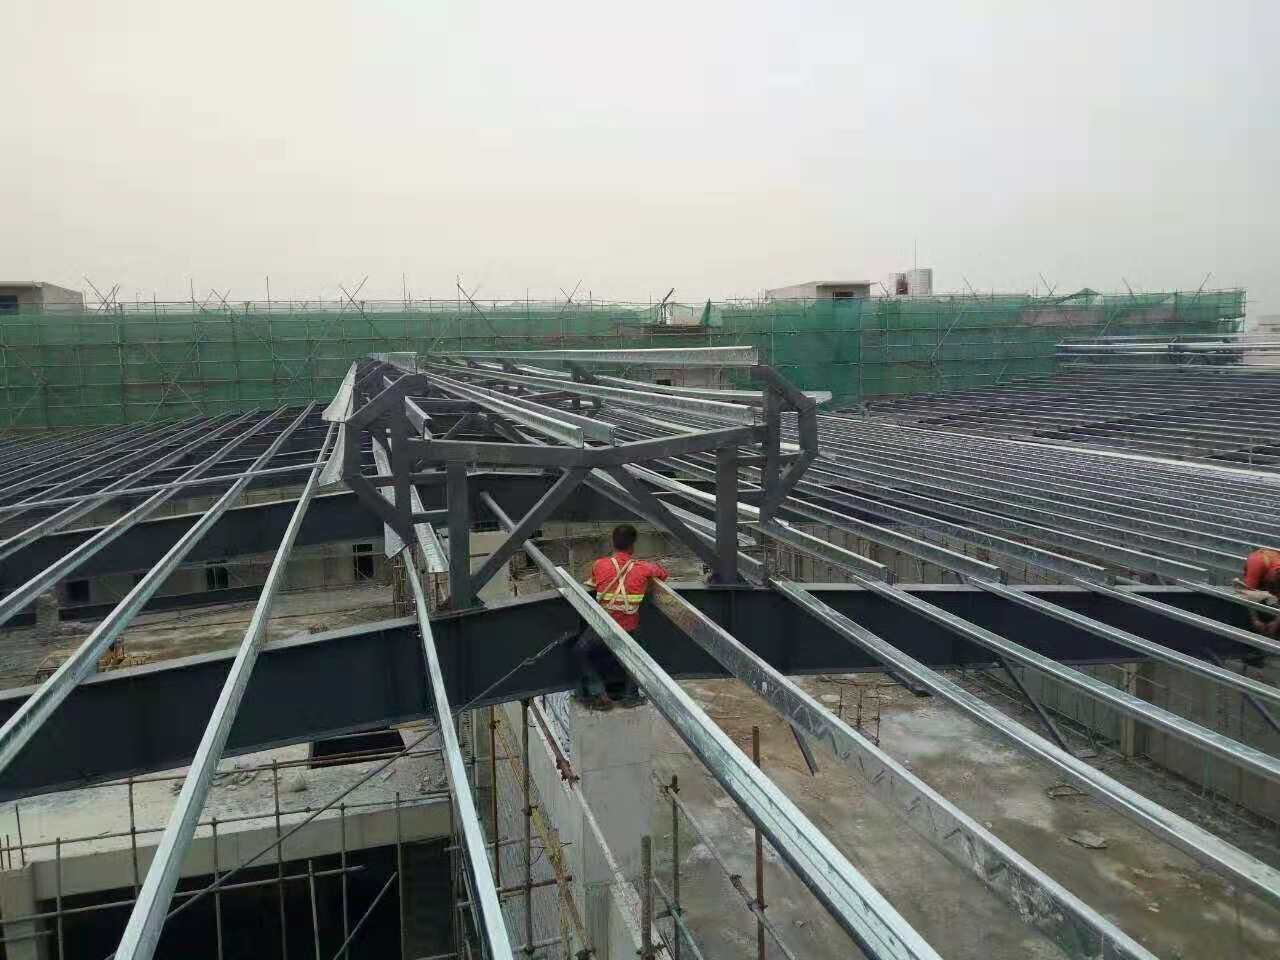 广州钢结构、广州钢结构公司